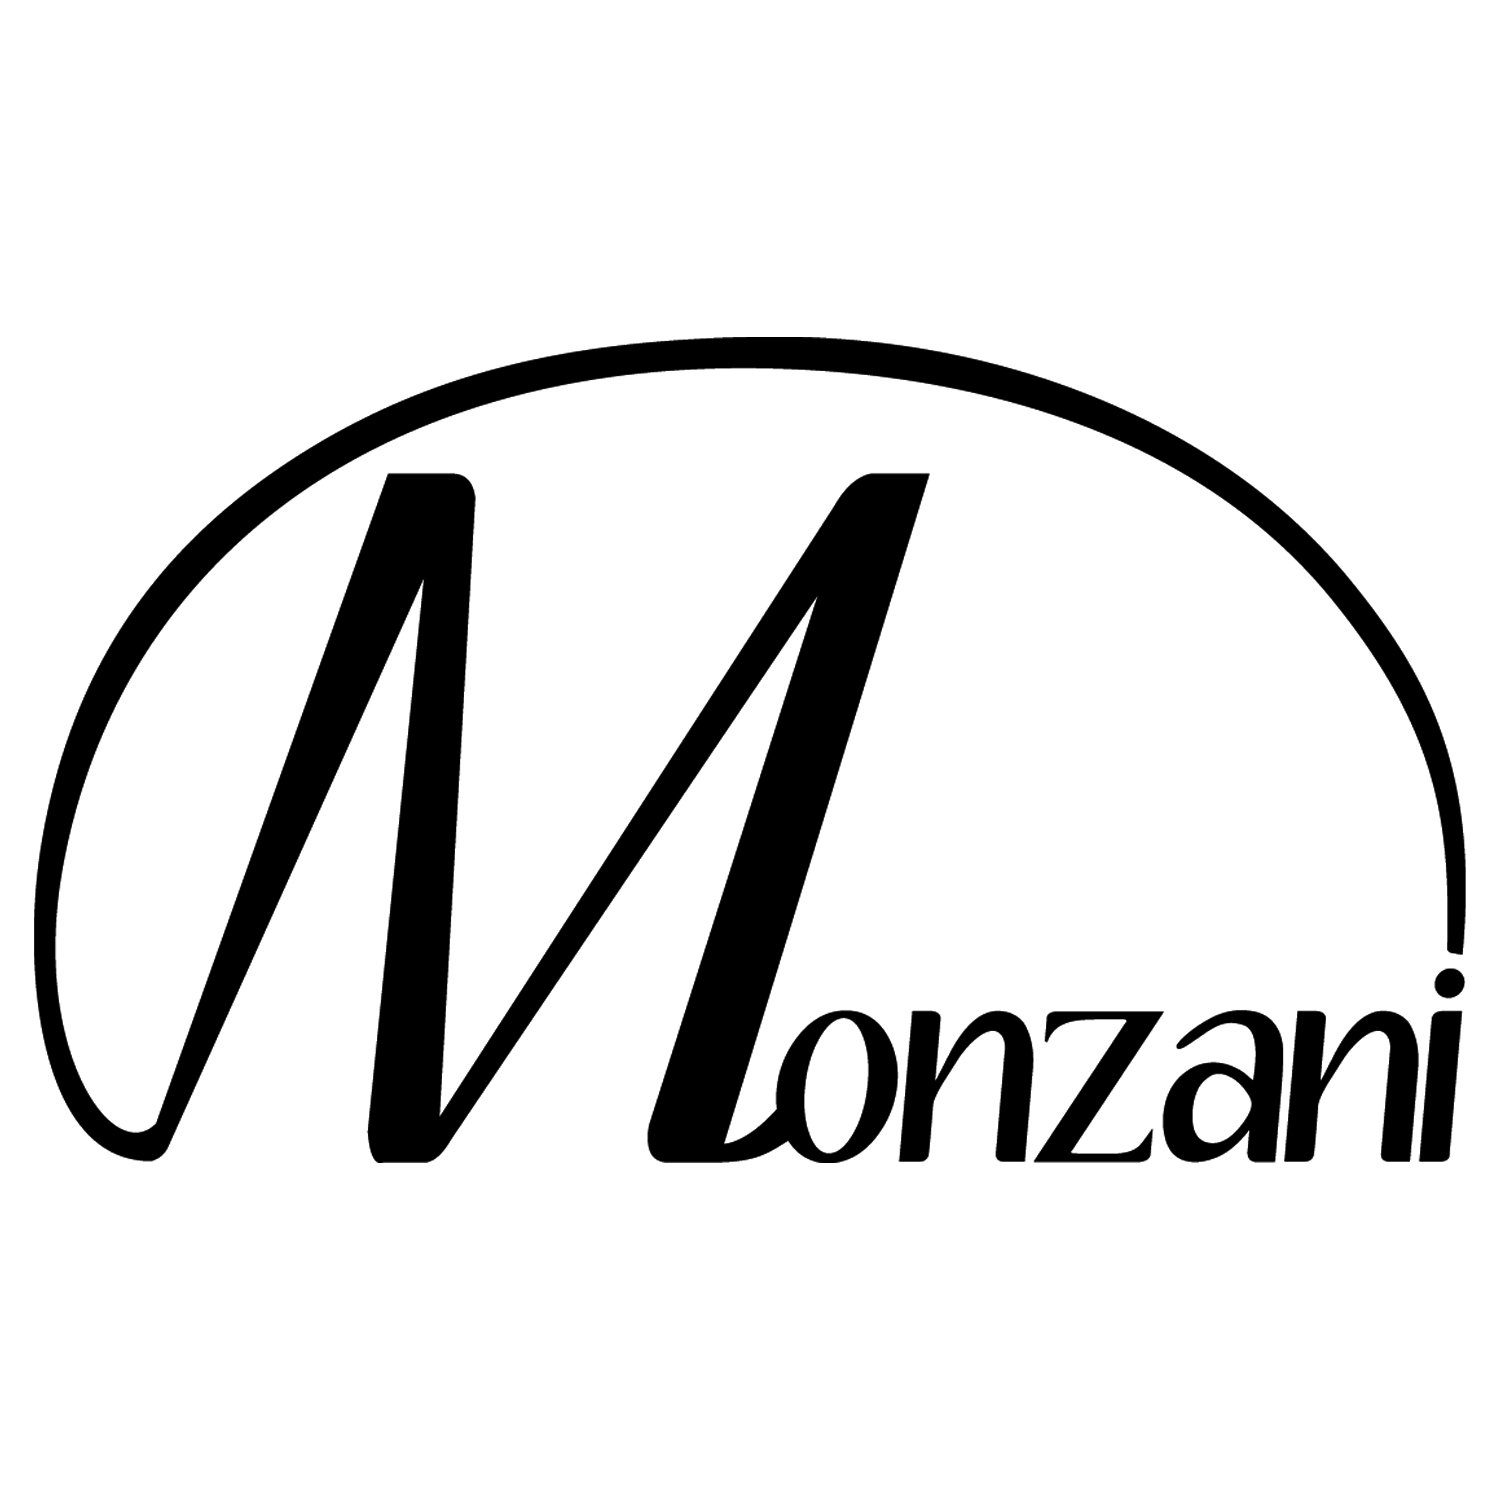 Monzani